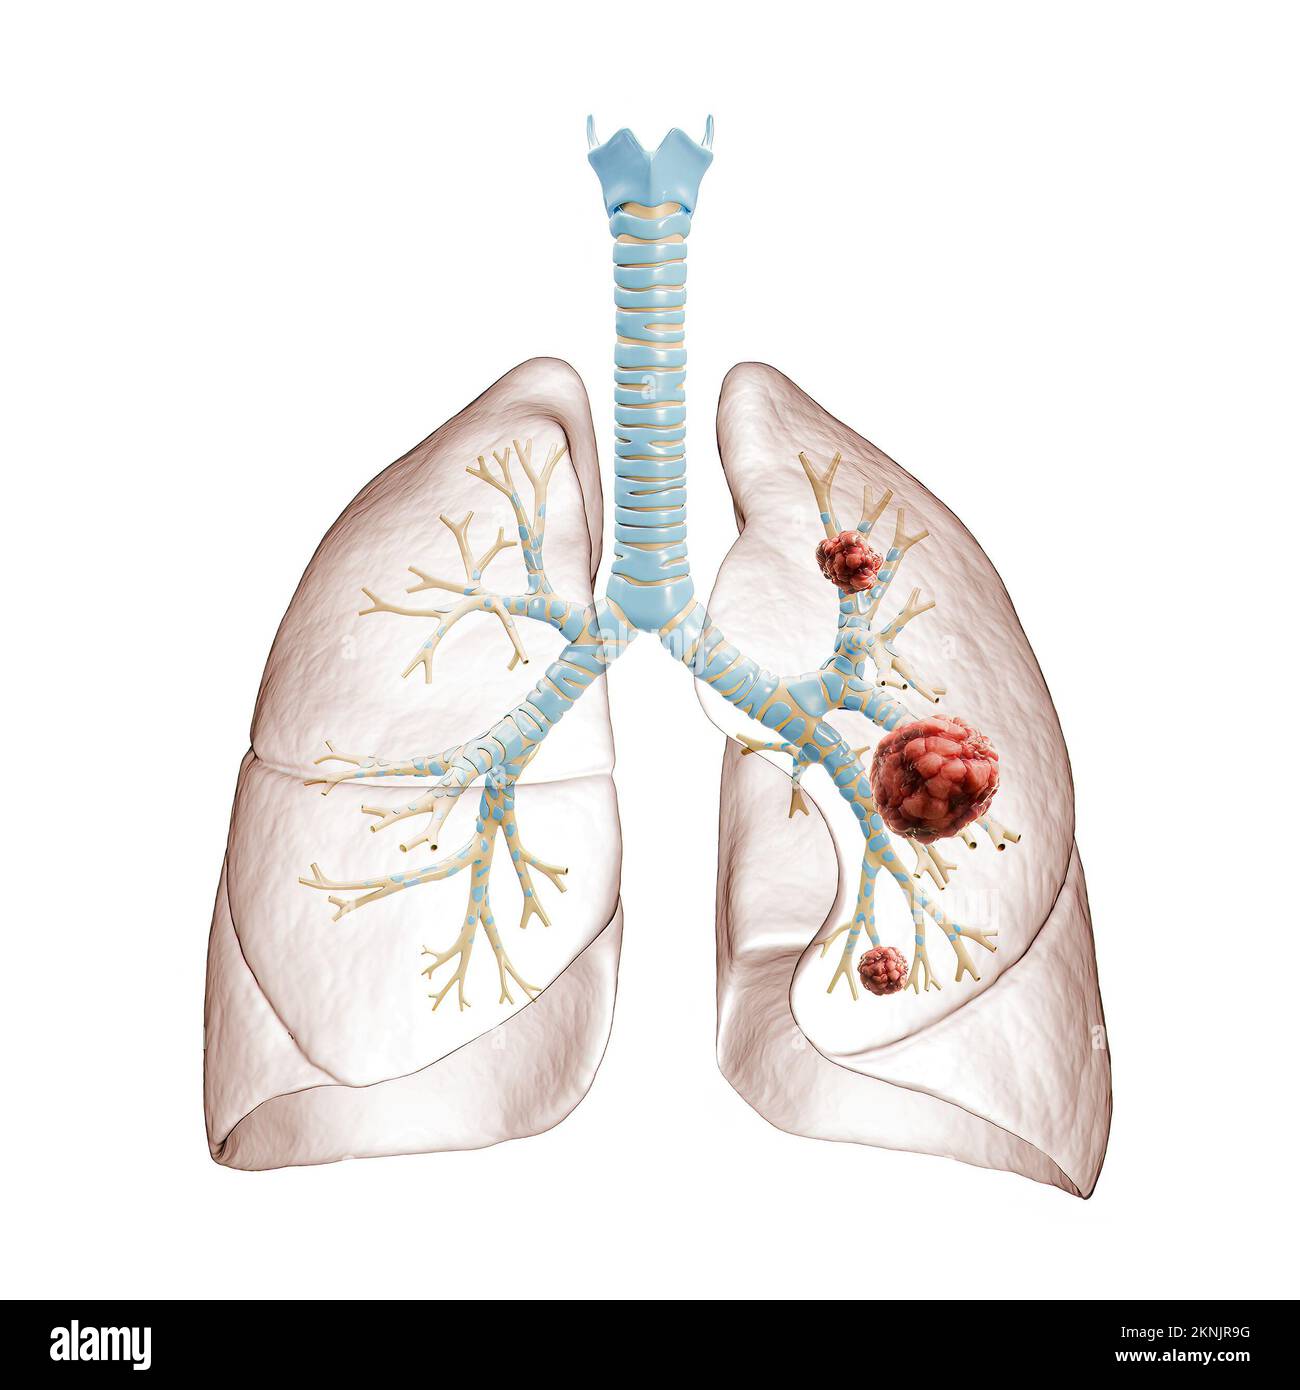 Illustration du cancer du poumon ou du carcinome 3D. Arbre bronchique et poumons infectés par des cellules cancéreuses sur fond blanc. Médical, santé, oncolo Banque D'Images